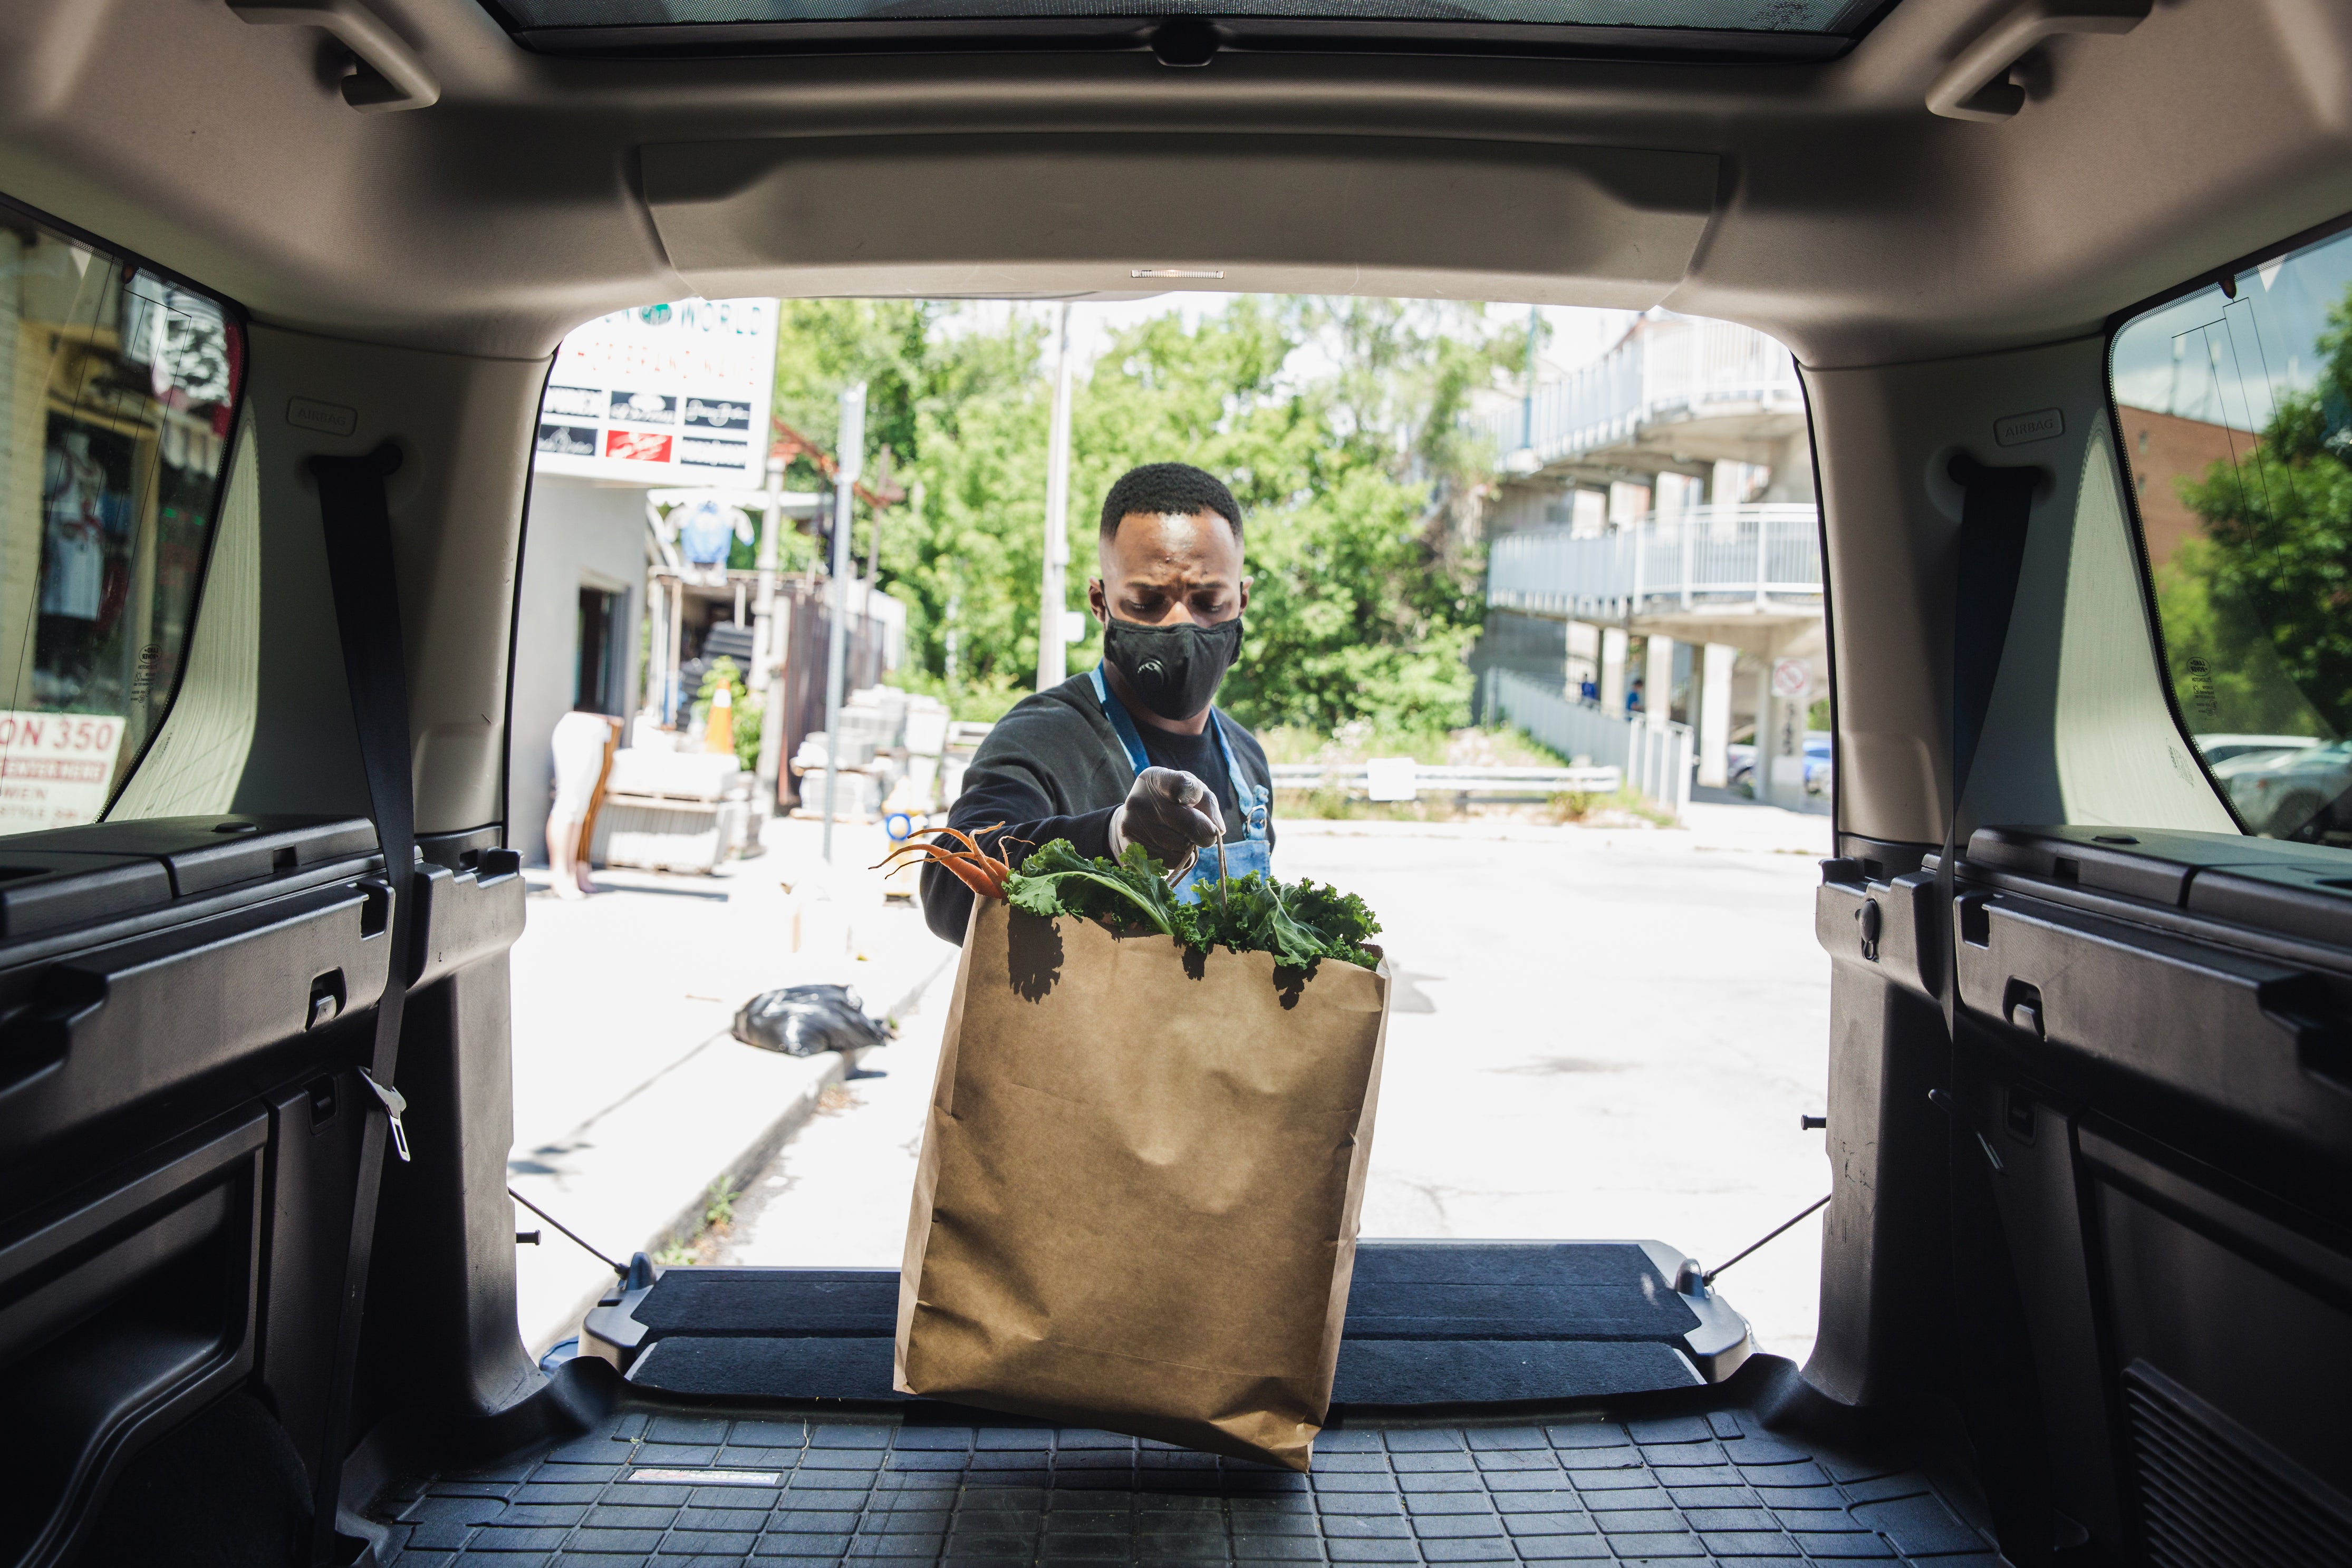 Blick aus dem Kofferraum eines Transporter auf einen Mann mit Maske, der gerade eine Tüte voller Lebensmittel in den Transporter stellt. Lebensmittel verkaufen geht bequem online. Falls der Versand nicht möglich ist, kannst du alternative Optionen wie die Abholung vor Ort anbieten.